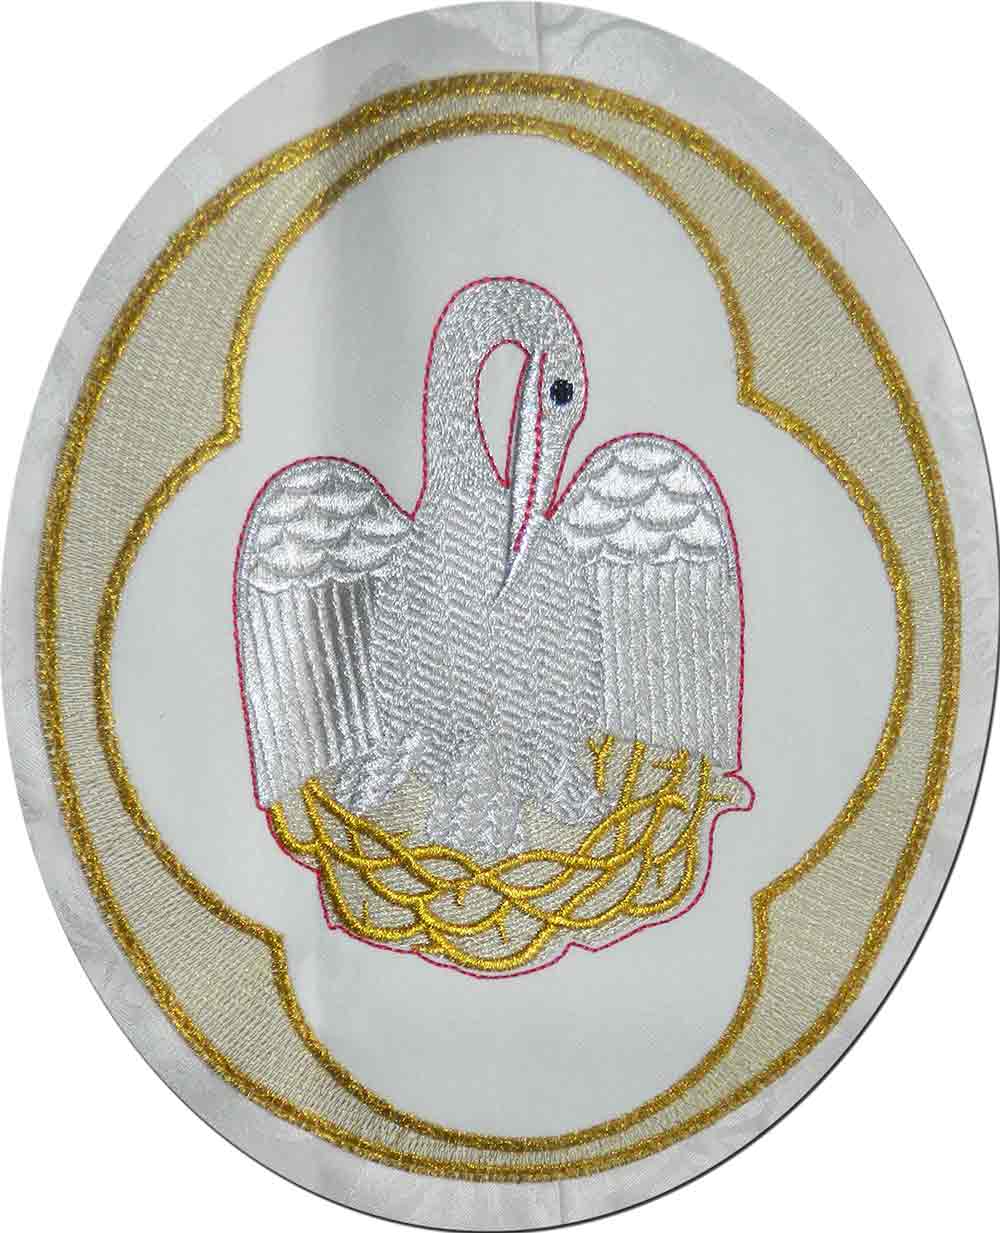 Palio procesional con bordados litúrgicos de pelicano